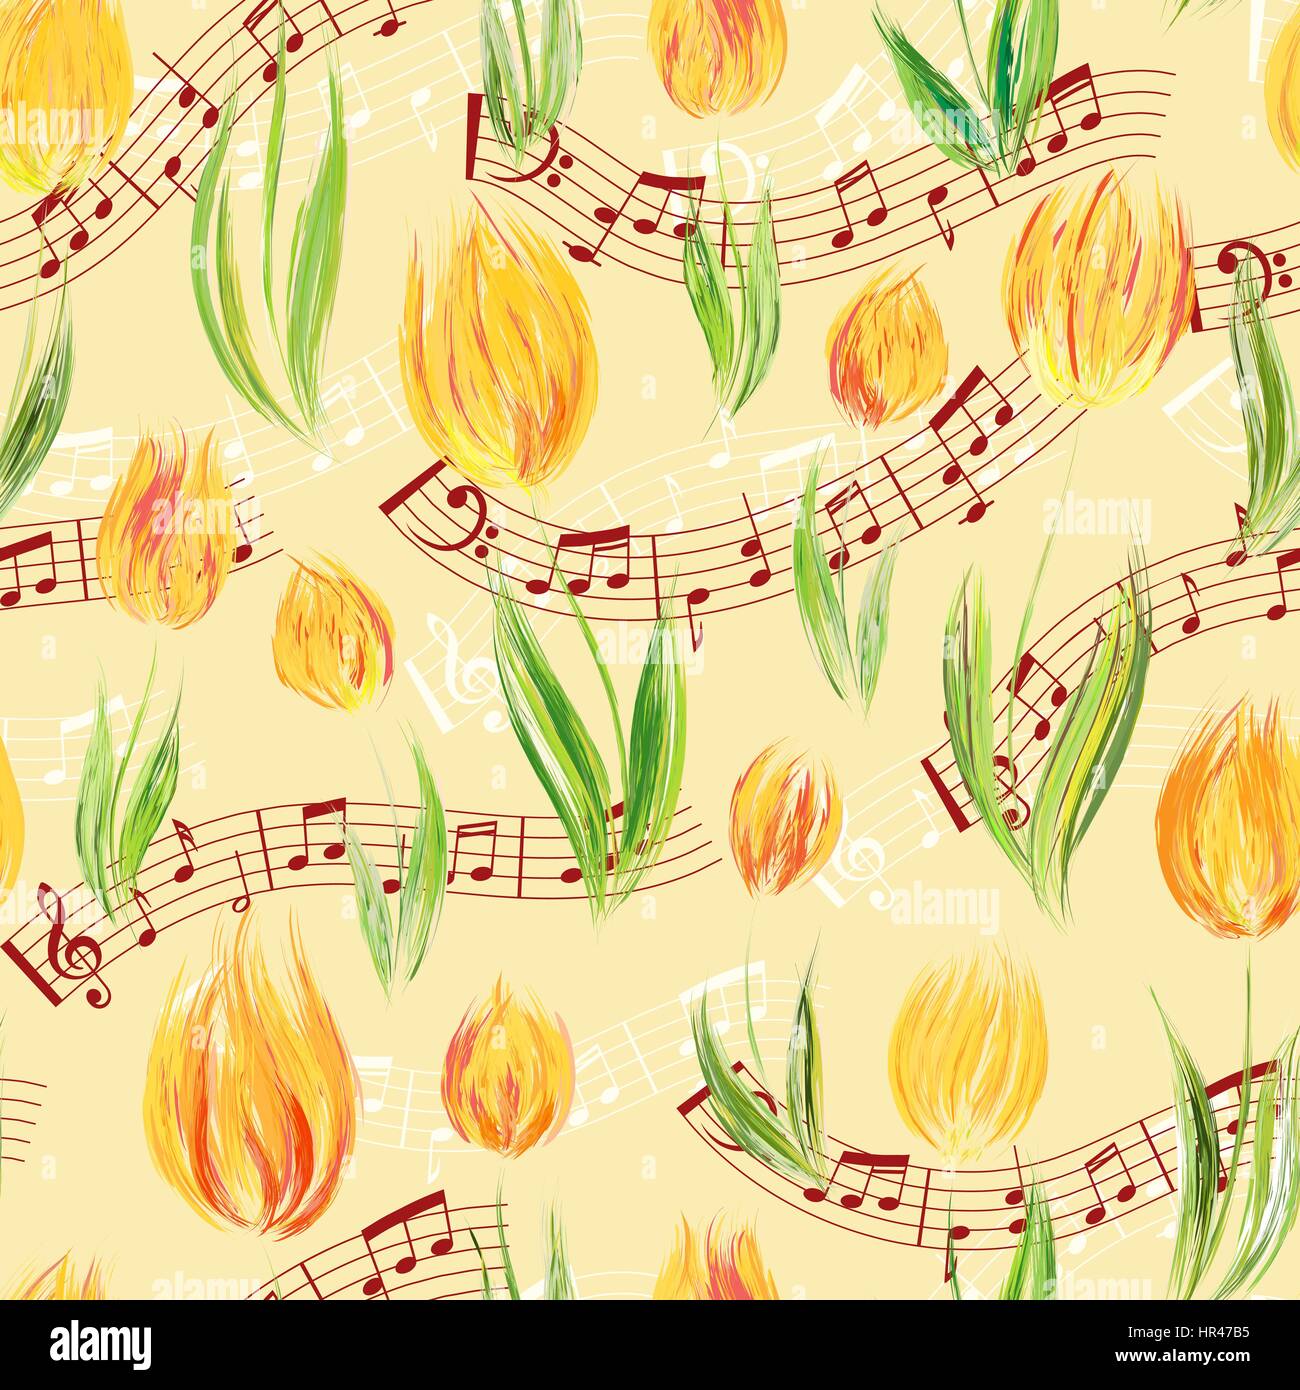 Motif transparent brillant avec de l'huile peint en jaune fleurs tulipes fin notes, éléments de conception. Motif floral pour les invitations de mariage, cartes de vœux, scra Illustration de Vecteur